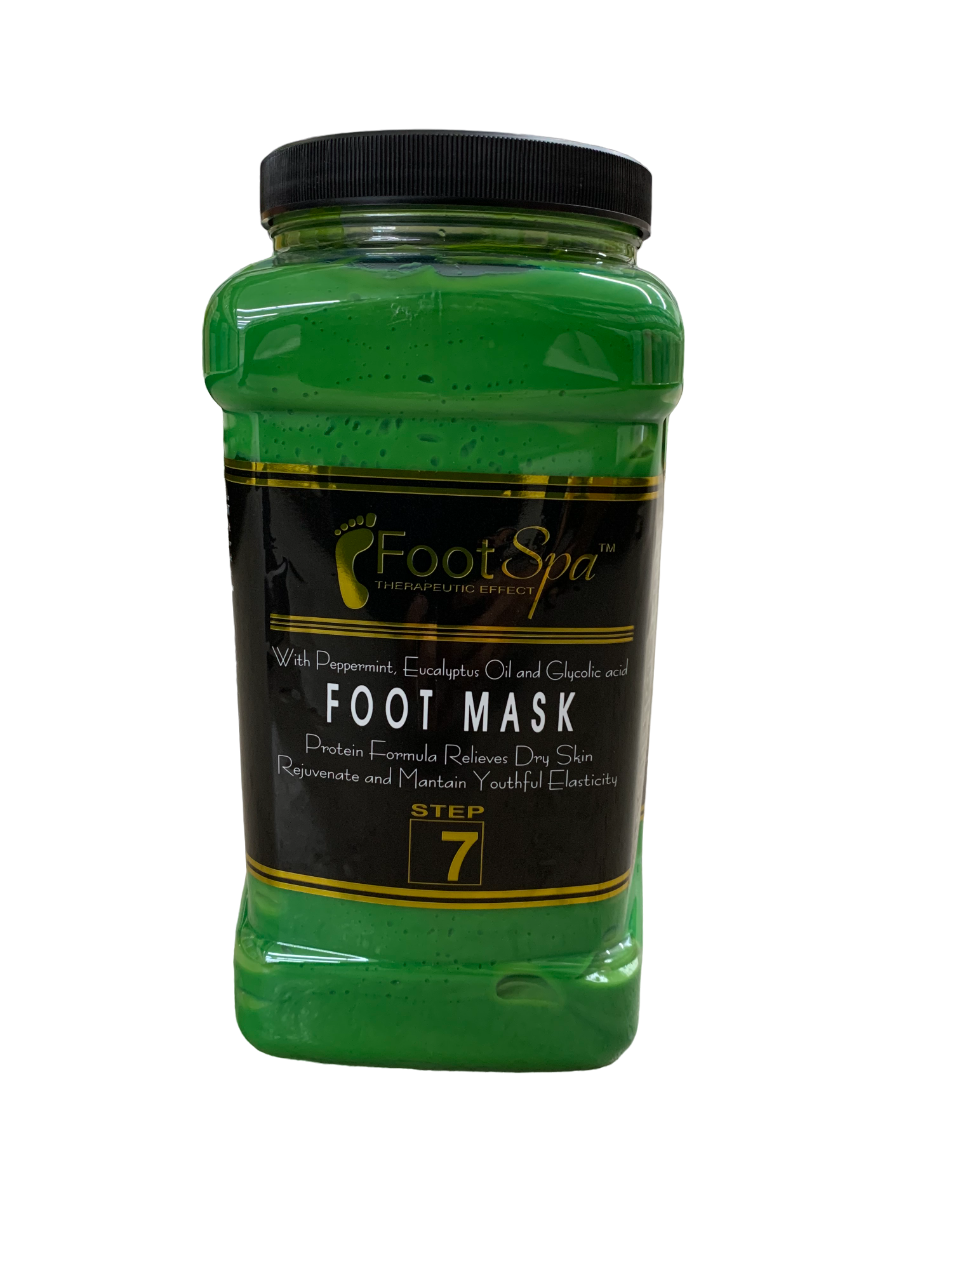 Foot Spa Foot Mask